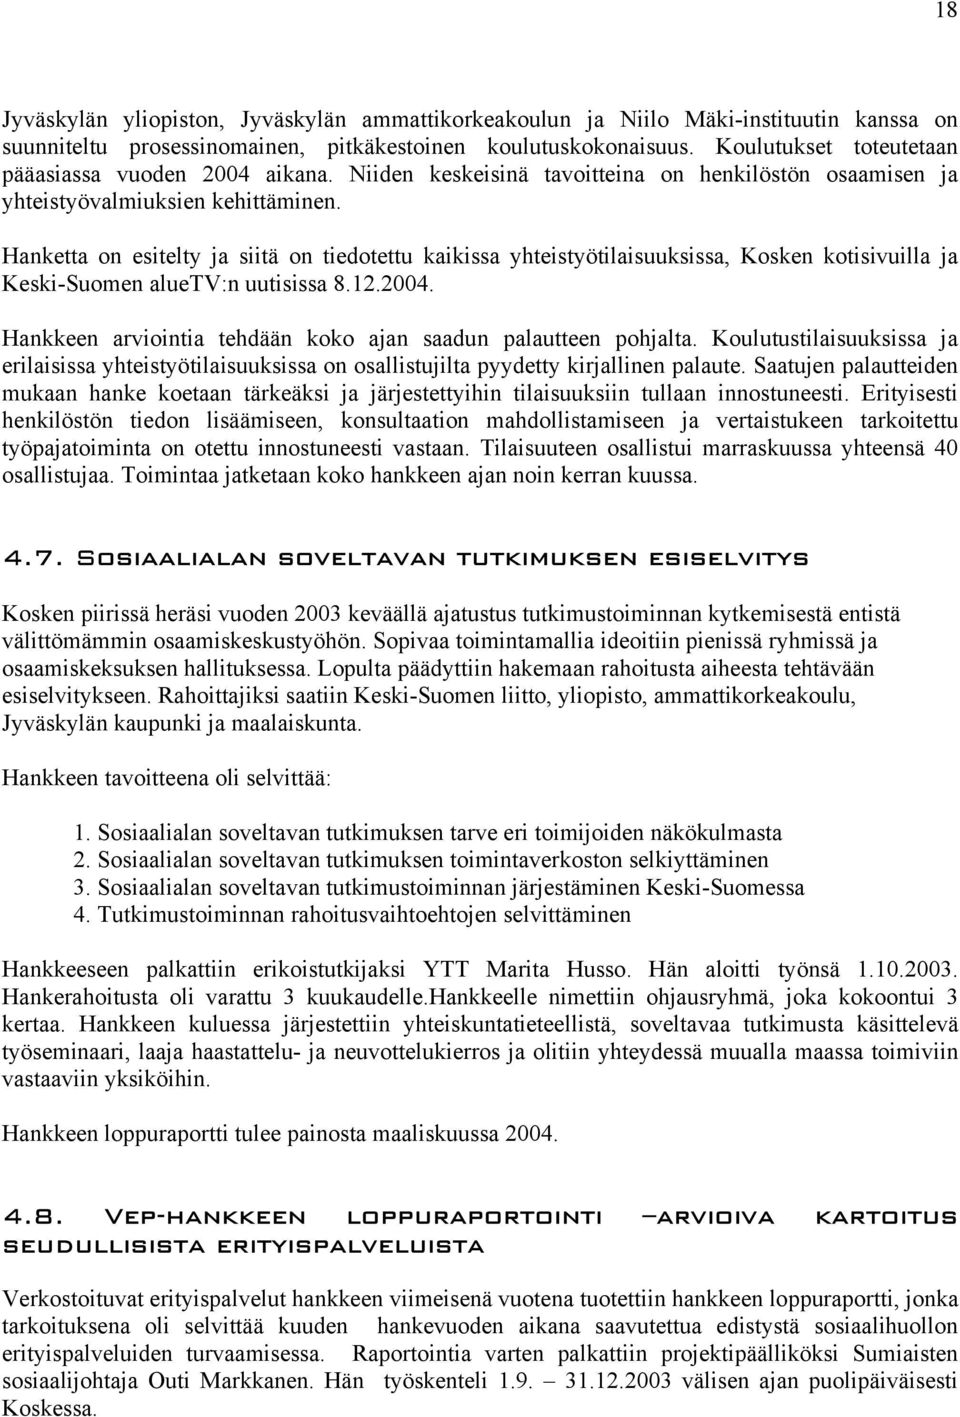 Hanketta on esitelty ja siitä on tiedotettu kaikissa yhteistyötilaisuuksissa, Kosken kotisivuilla ja Keski-Suomen aluetv:n uutisissa 8.12.2004.